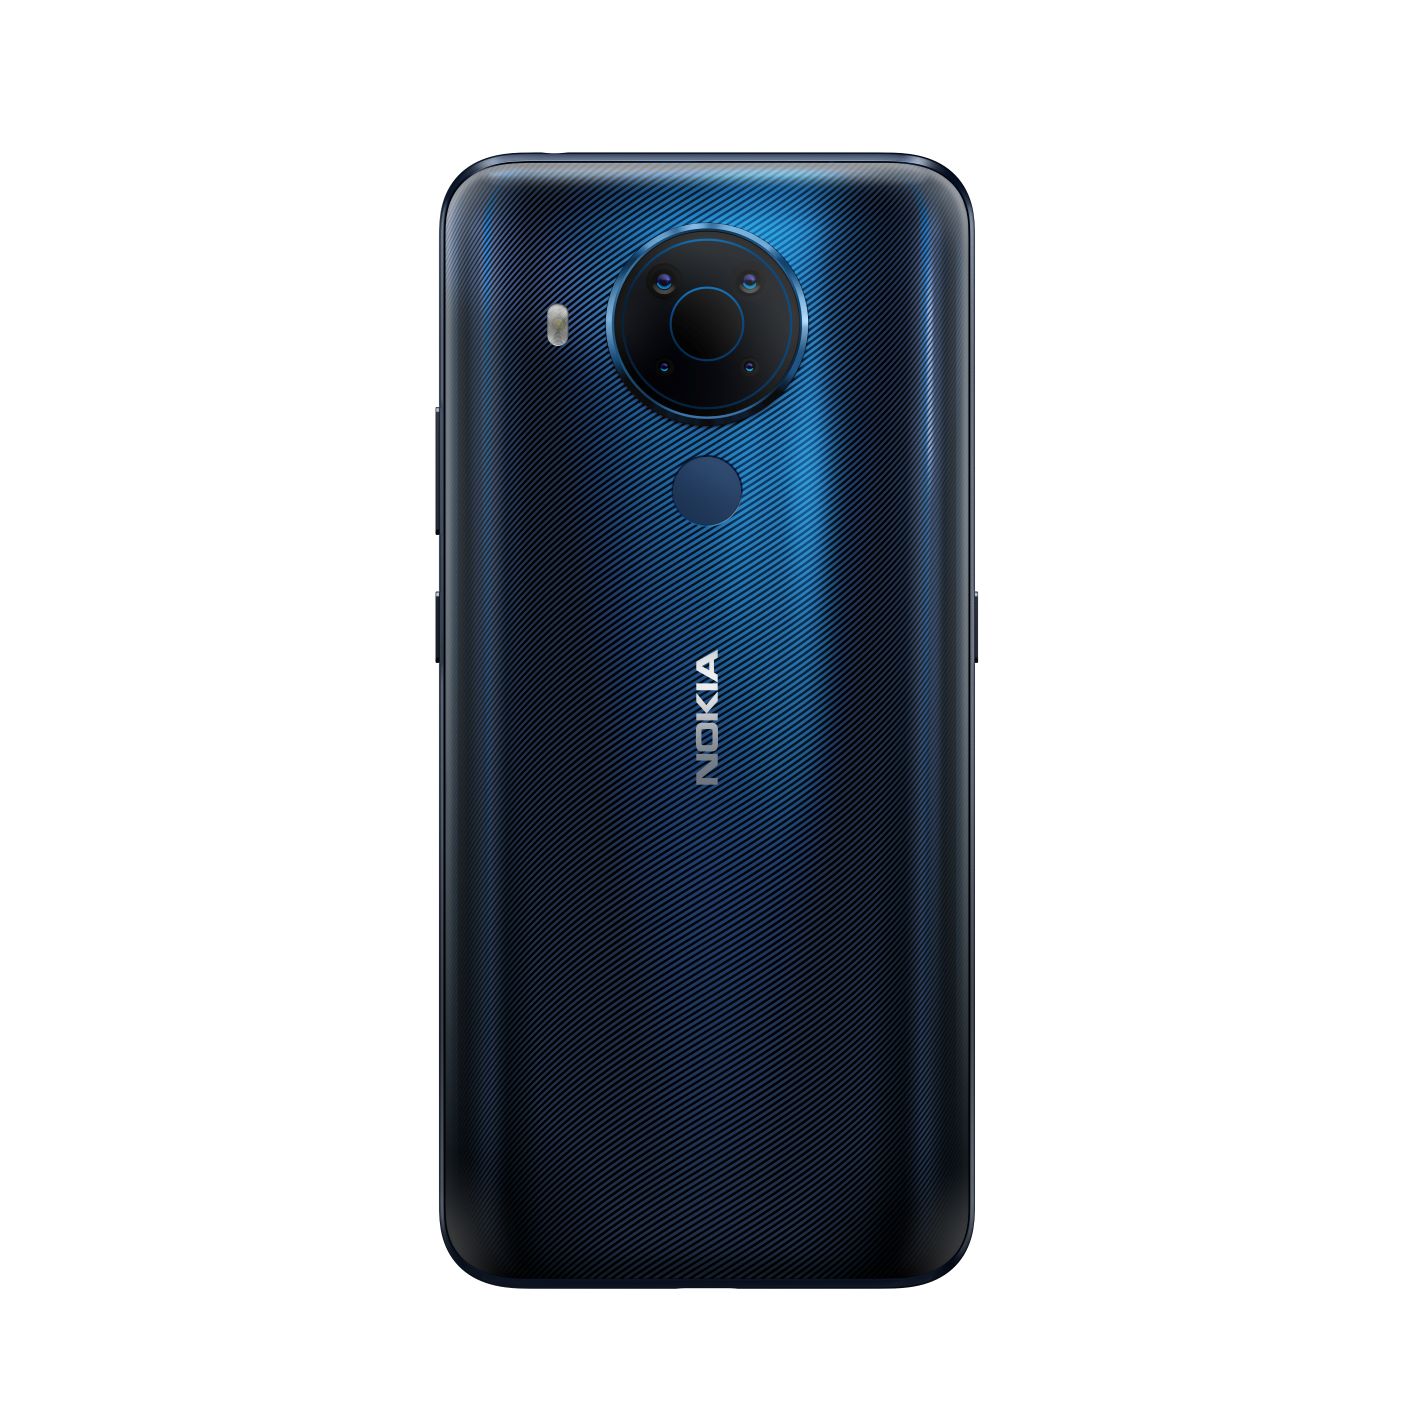 Chính thức ra mắt Nokia 5.4 – Bắt trọn thế giới muôn màu